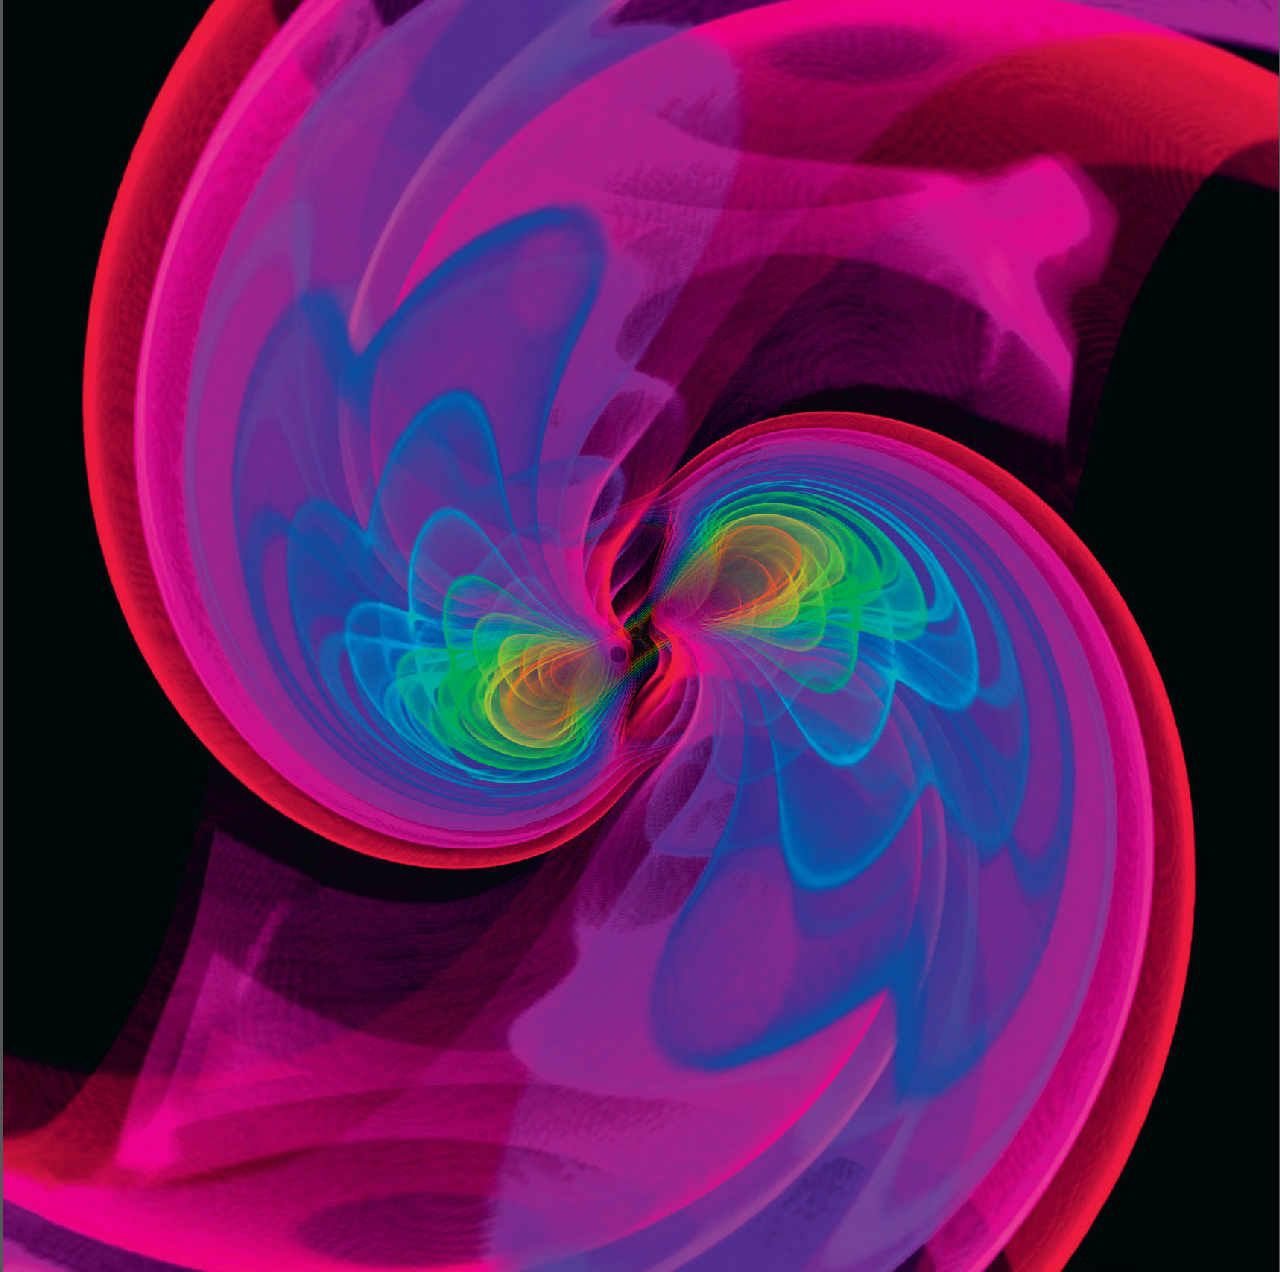  模拟双LIGO探测器检测到的制造引力波的黑洞撞击图